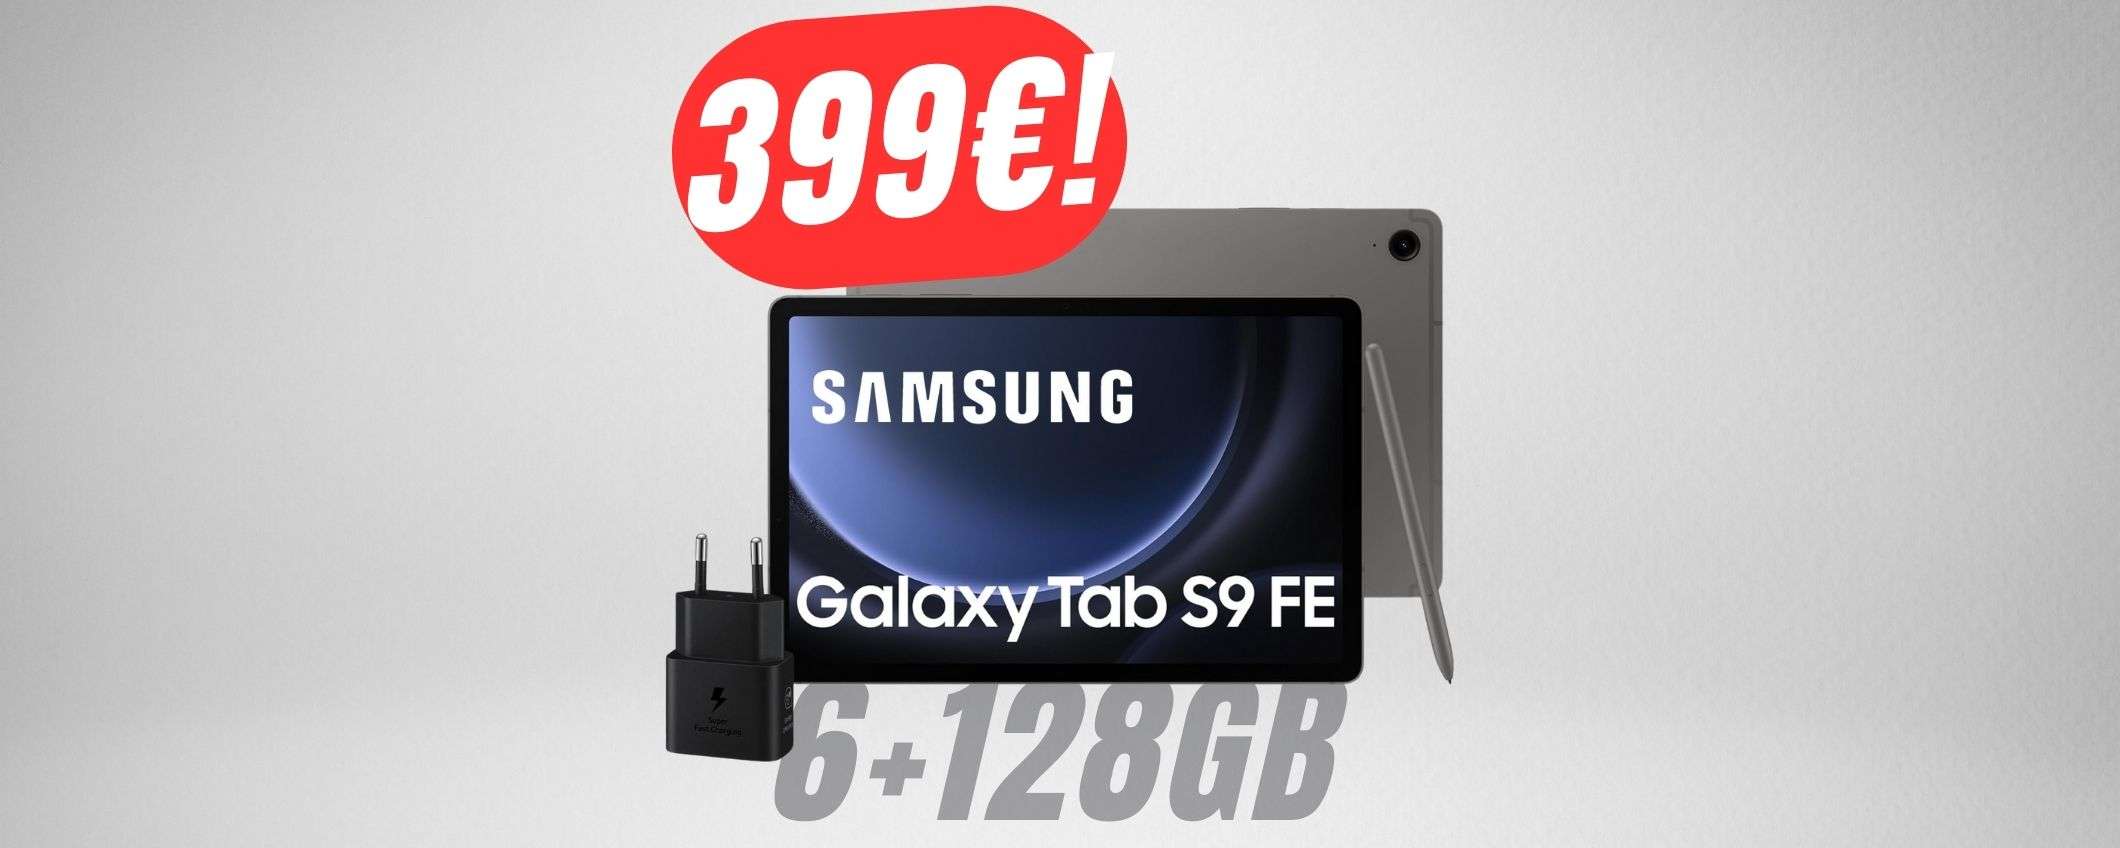 Da 649€ a 399€: il TABLET di Samsung con PENNA a un prezzo clamoroso!